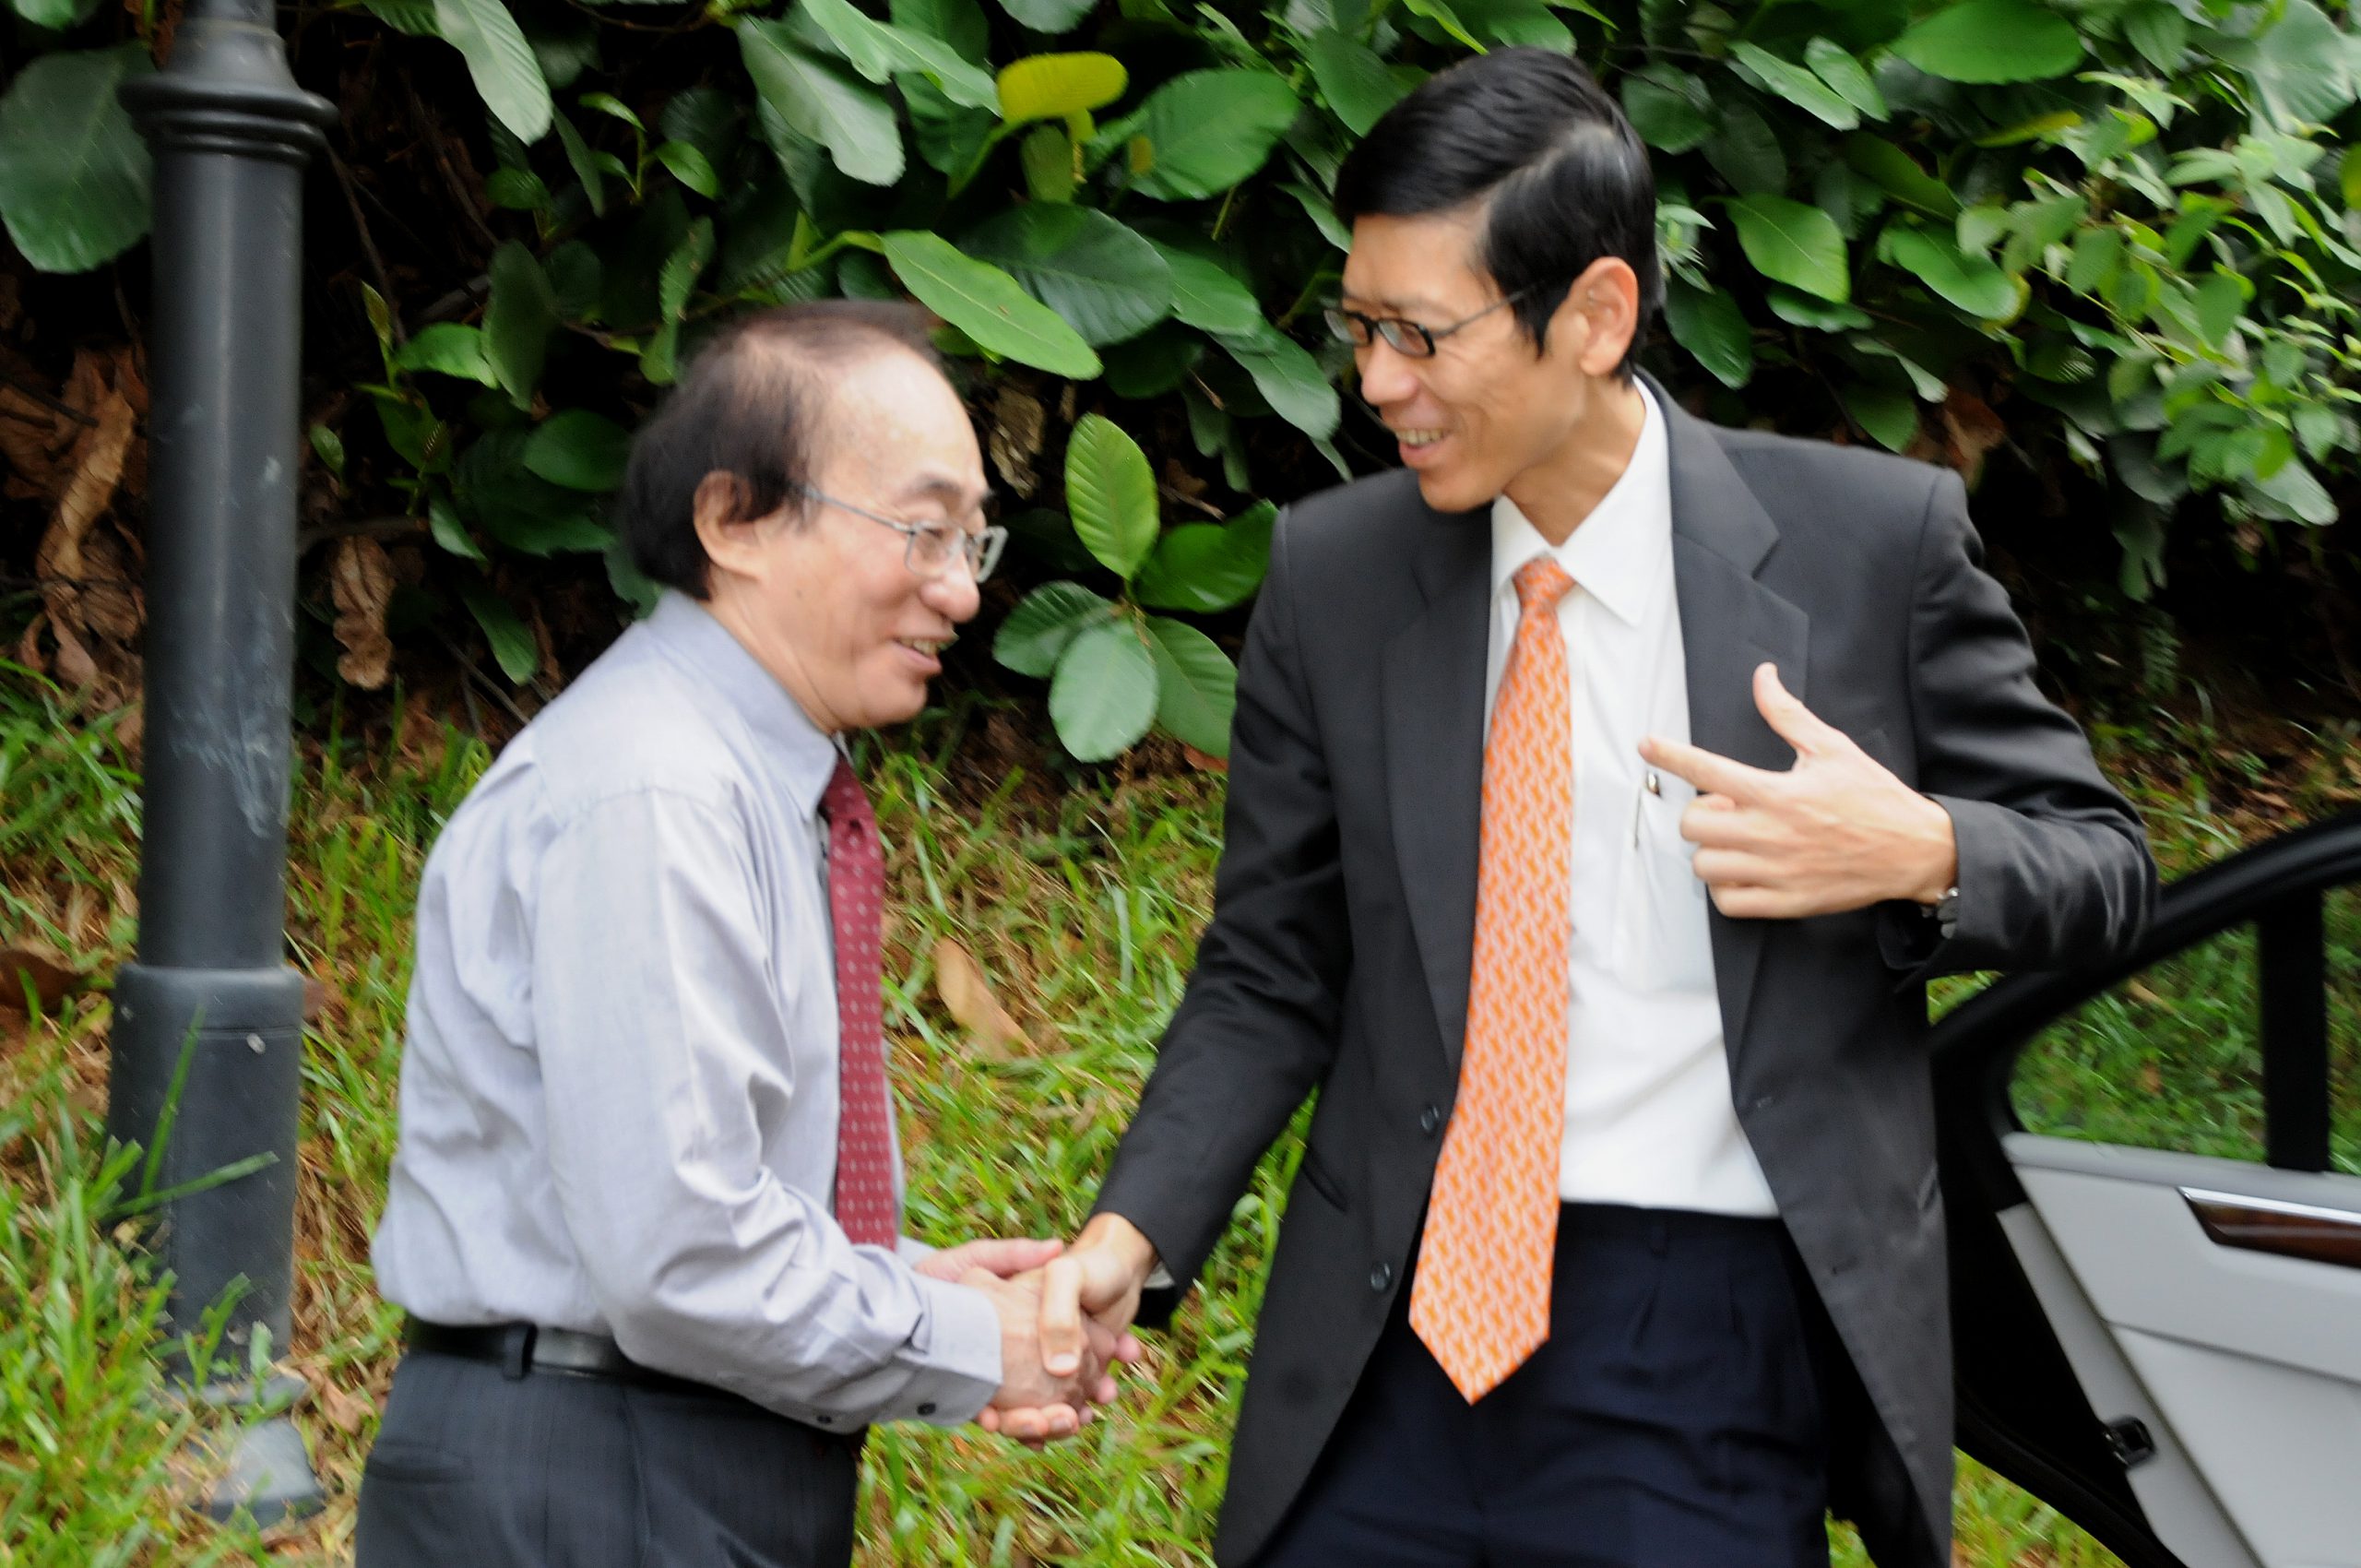 IMS Director Louis CHEN greets NUS President TAN Chorh Chuan